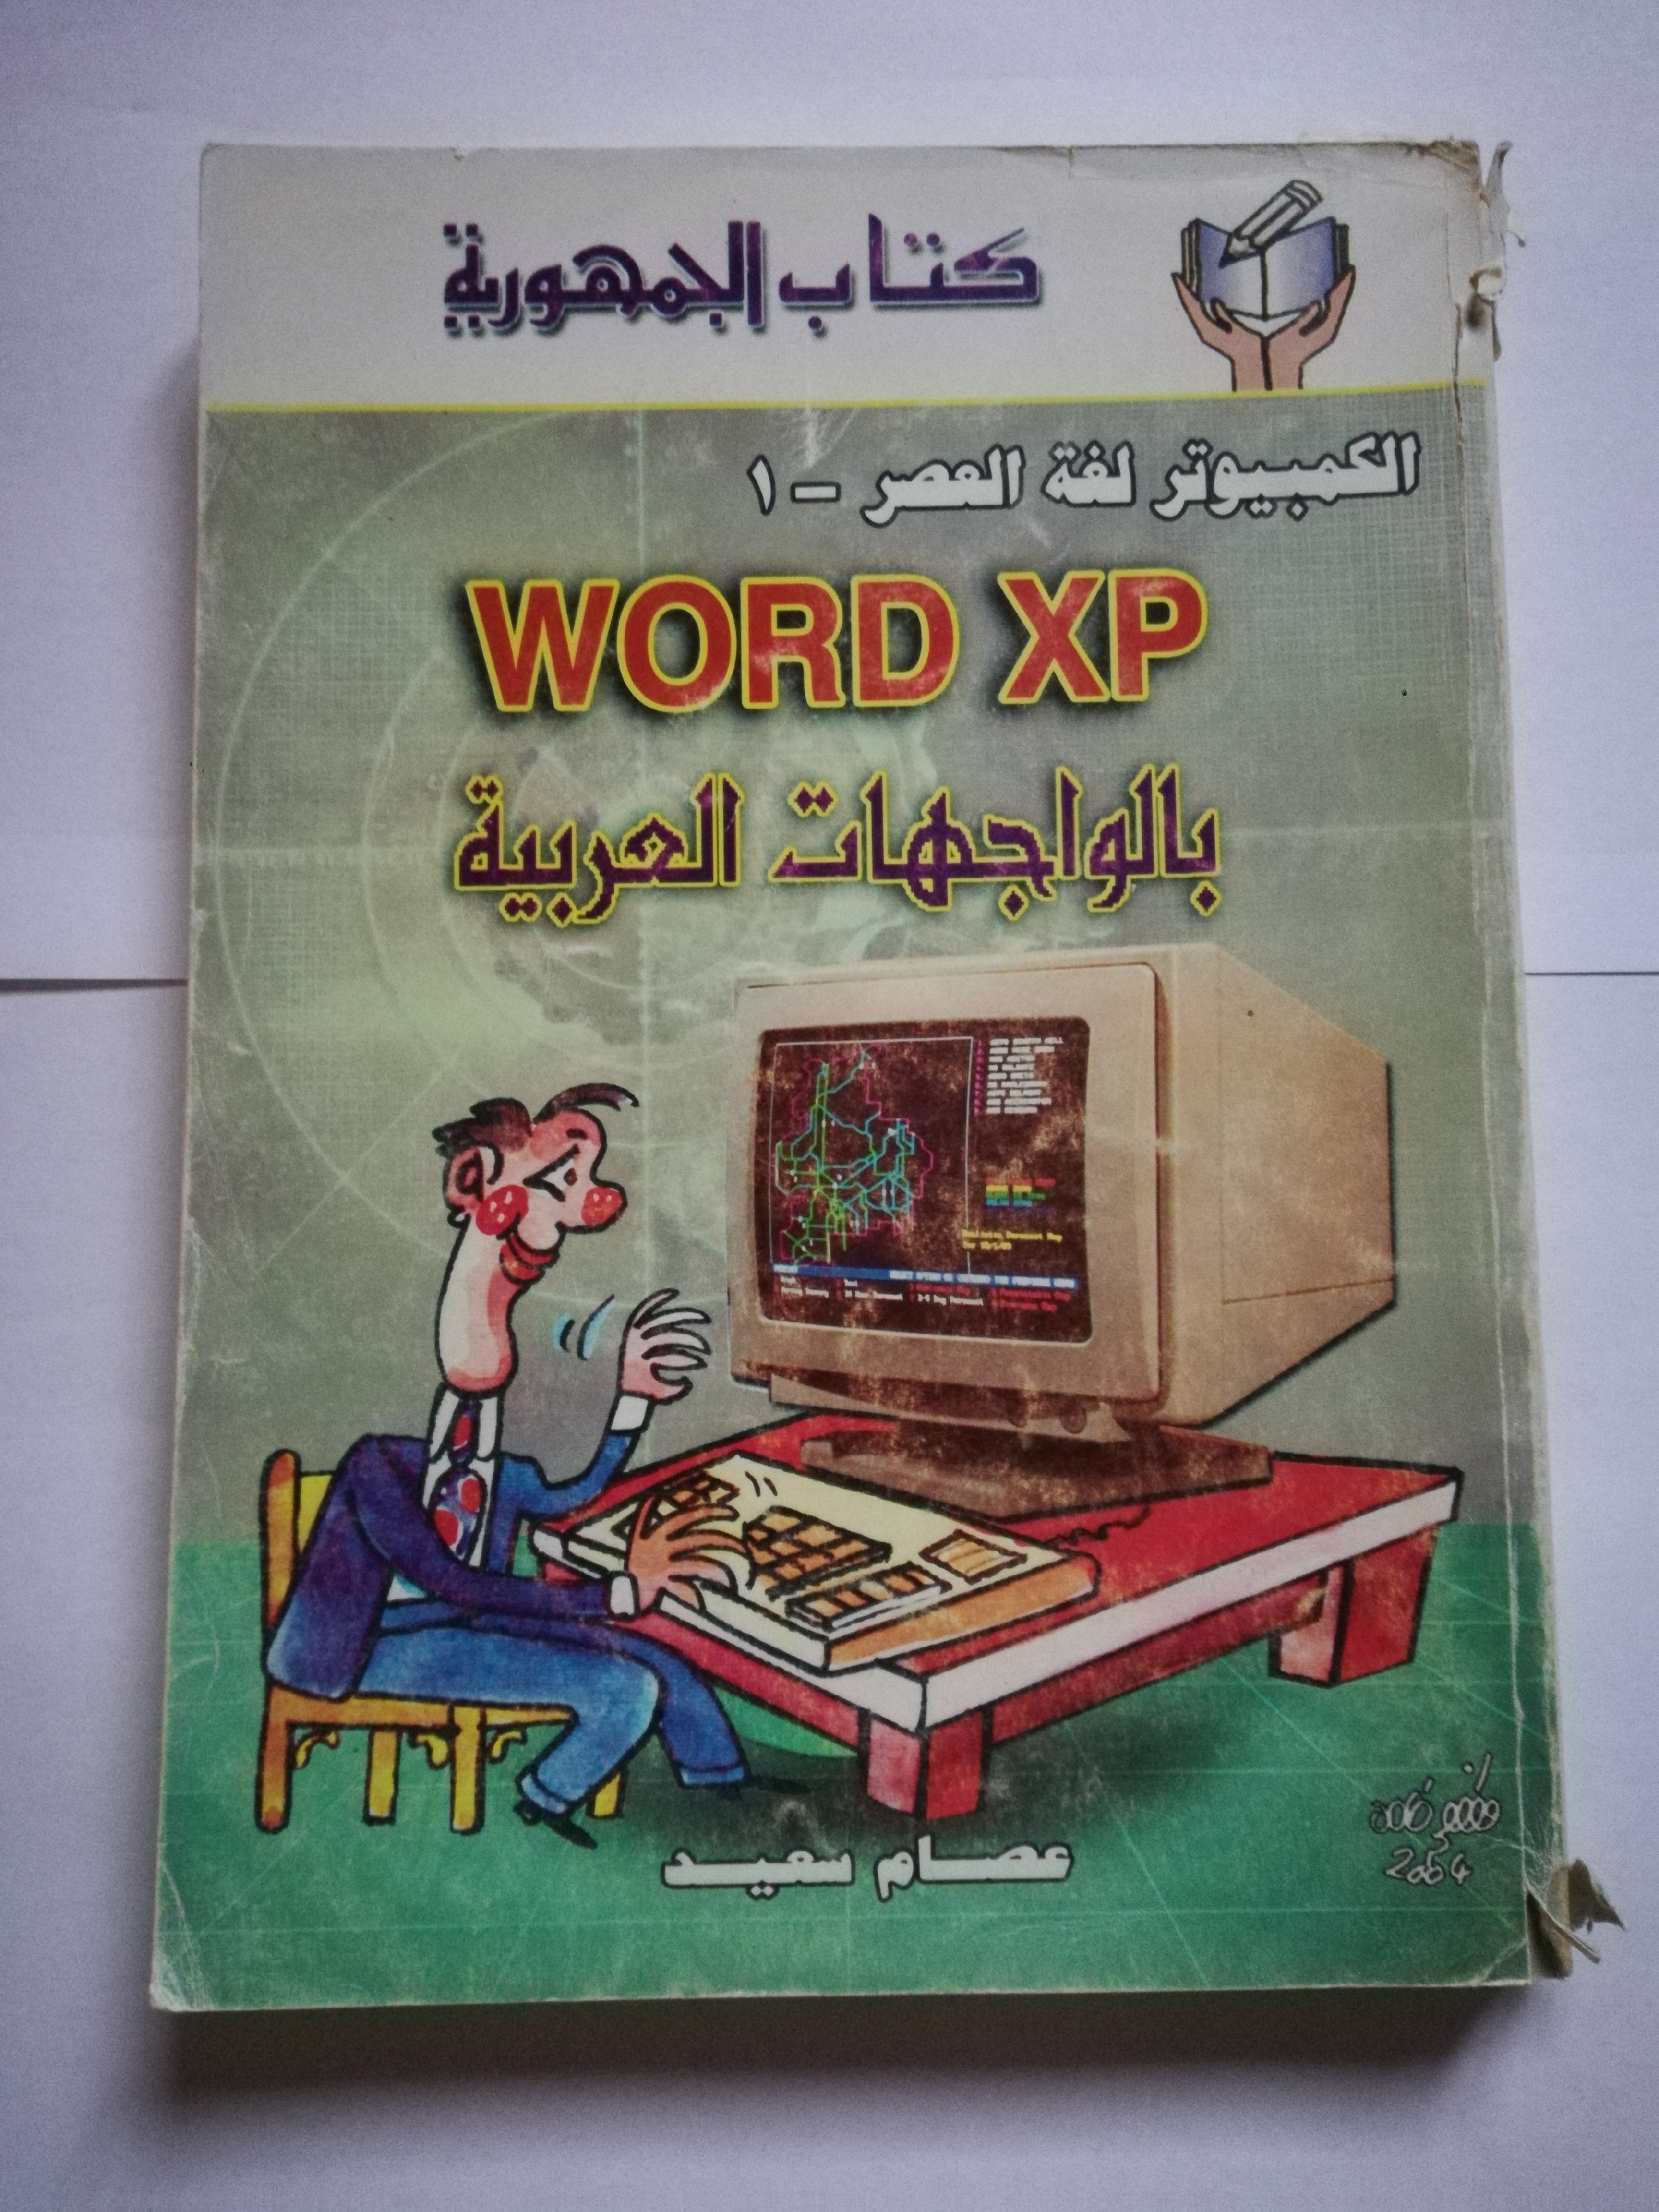 WORD XP بالوجهات العربية